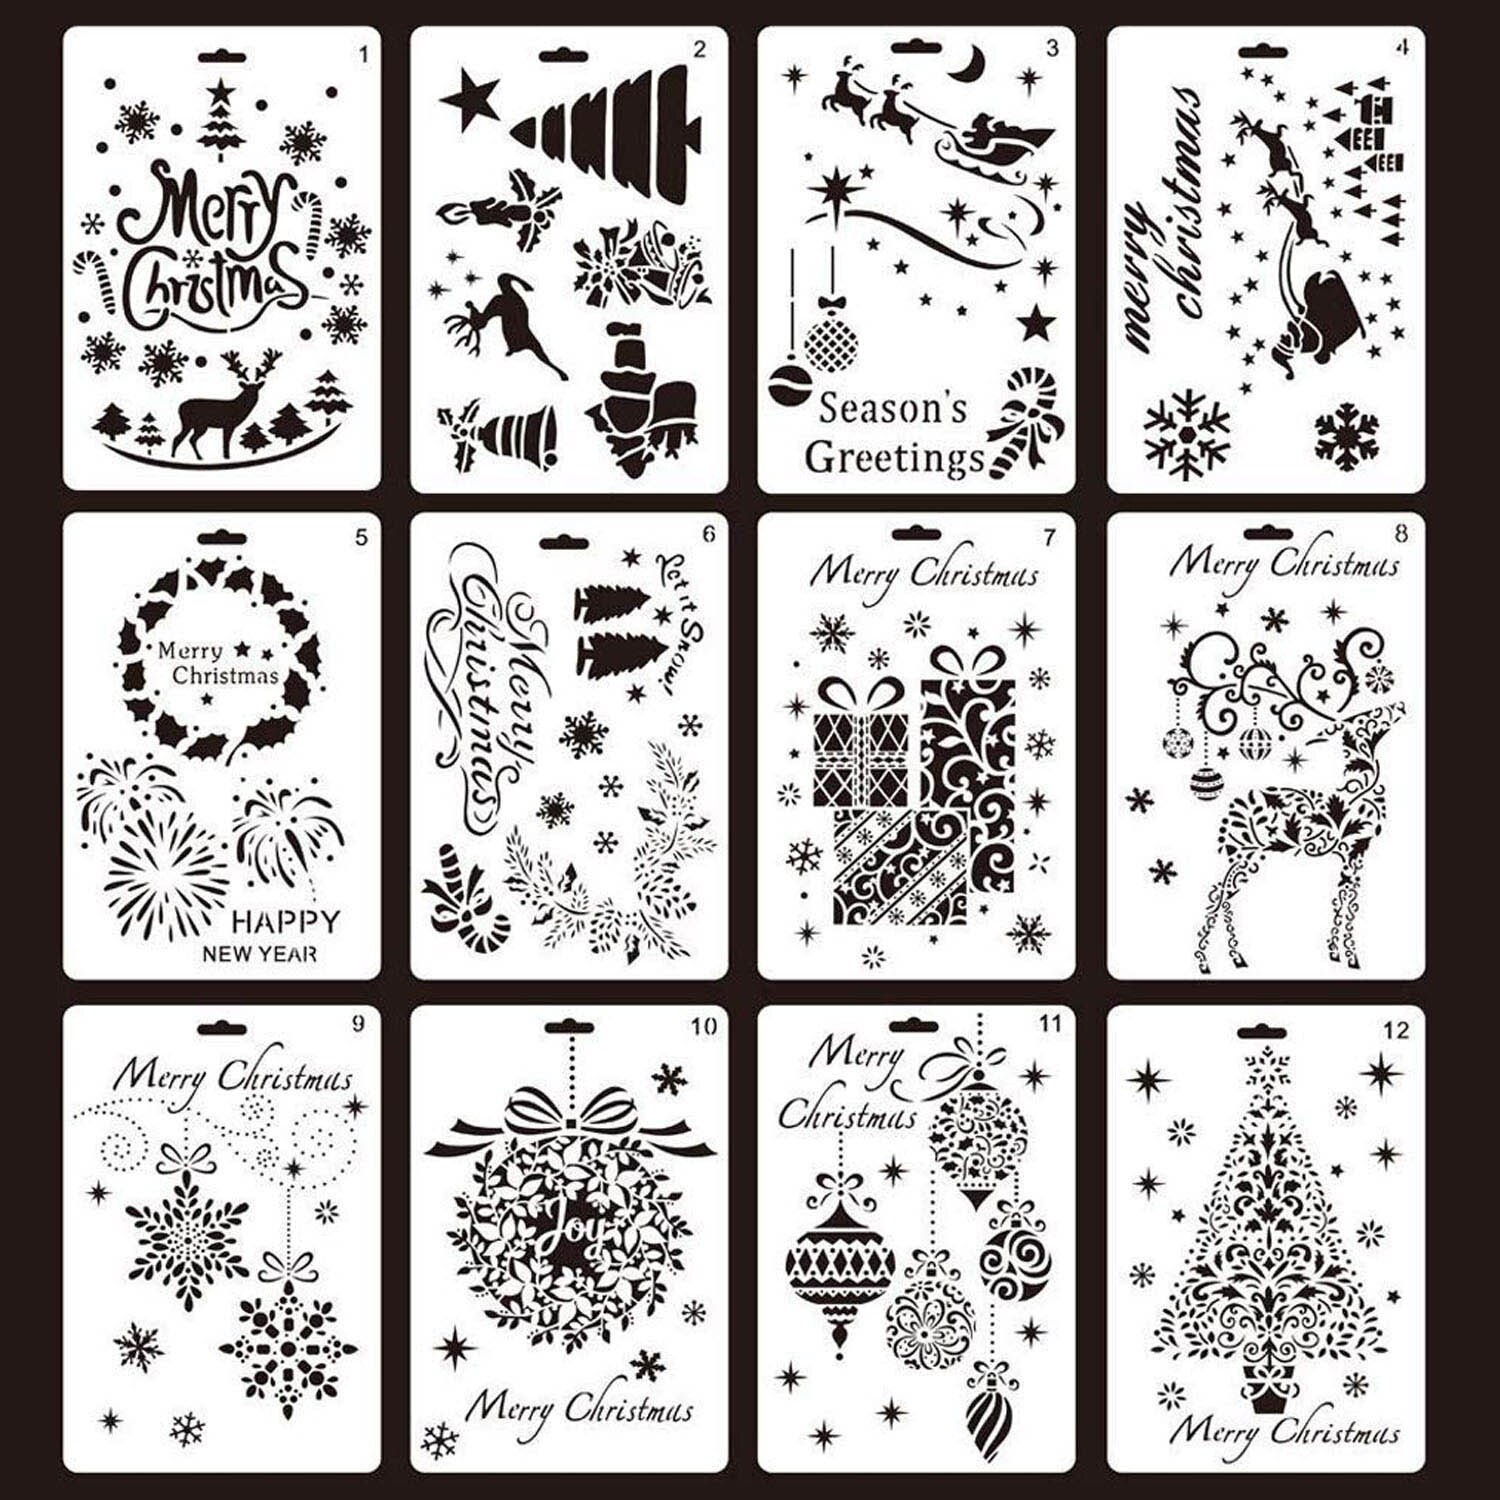 12 stks Diverse Stijl Vrolijk Kerst Schilderij Tekening Stencils Sjablonen voor Pigment School Project Scrapbooking DIY Craft Album